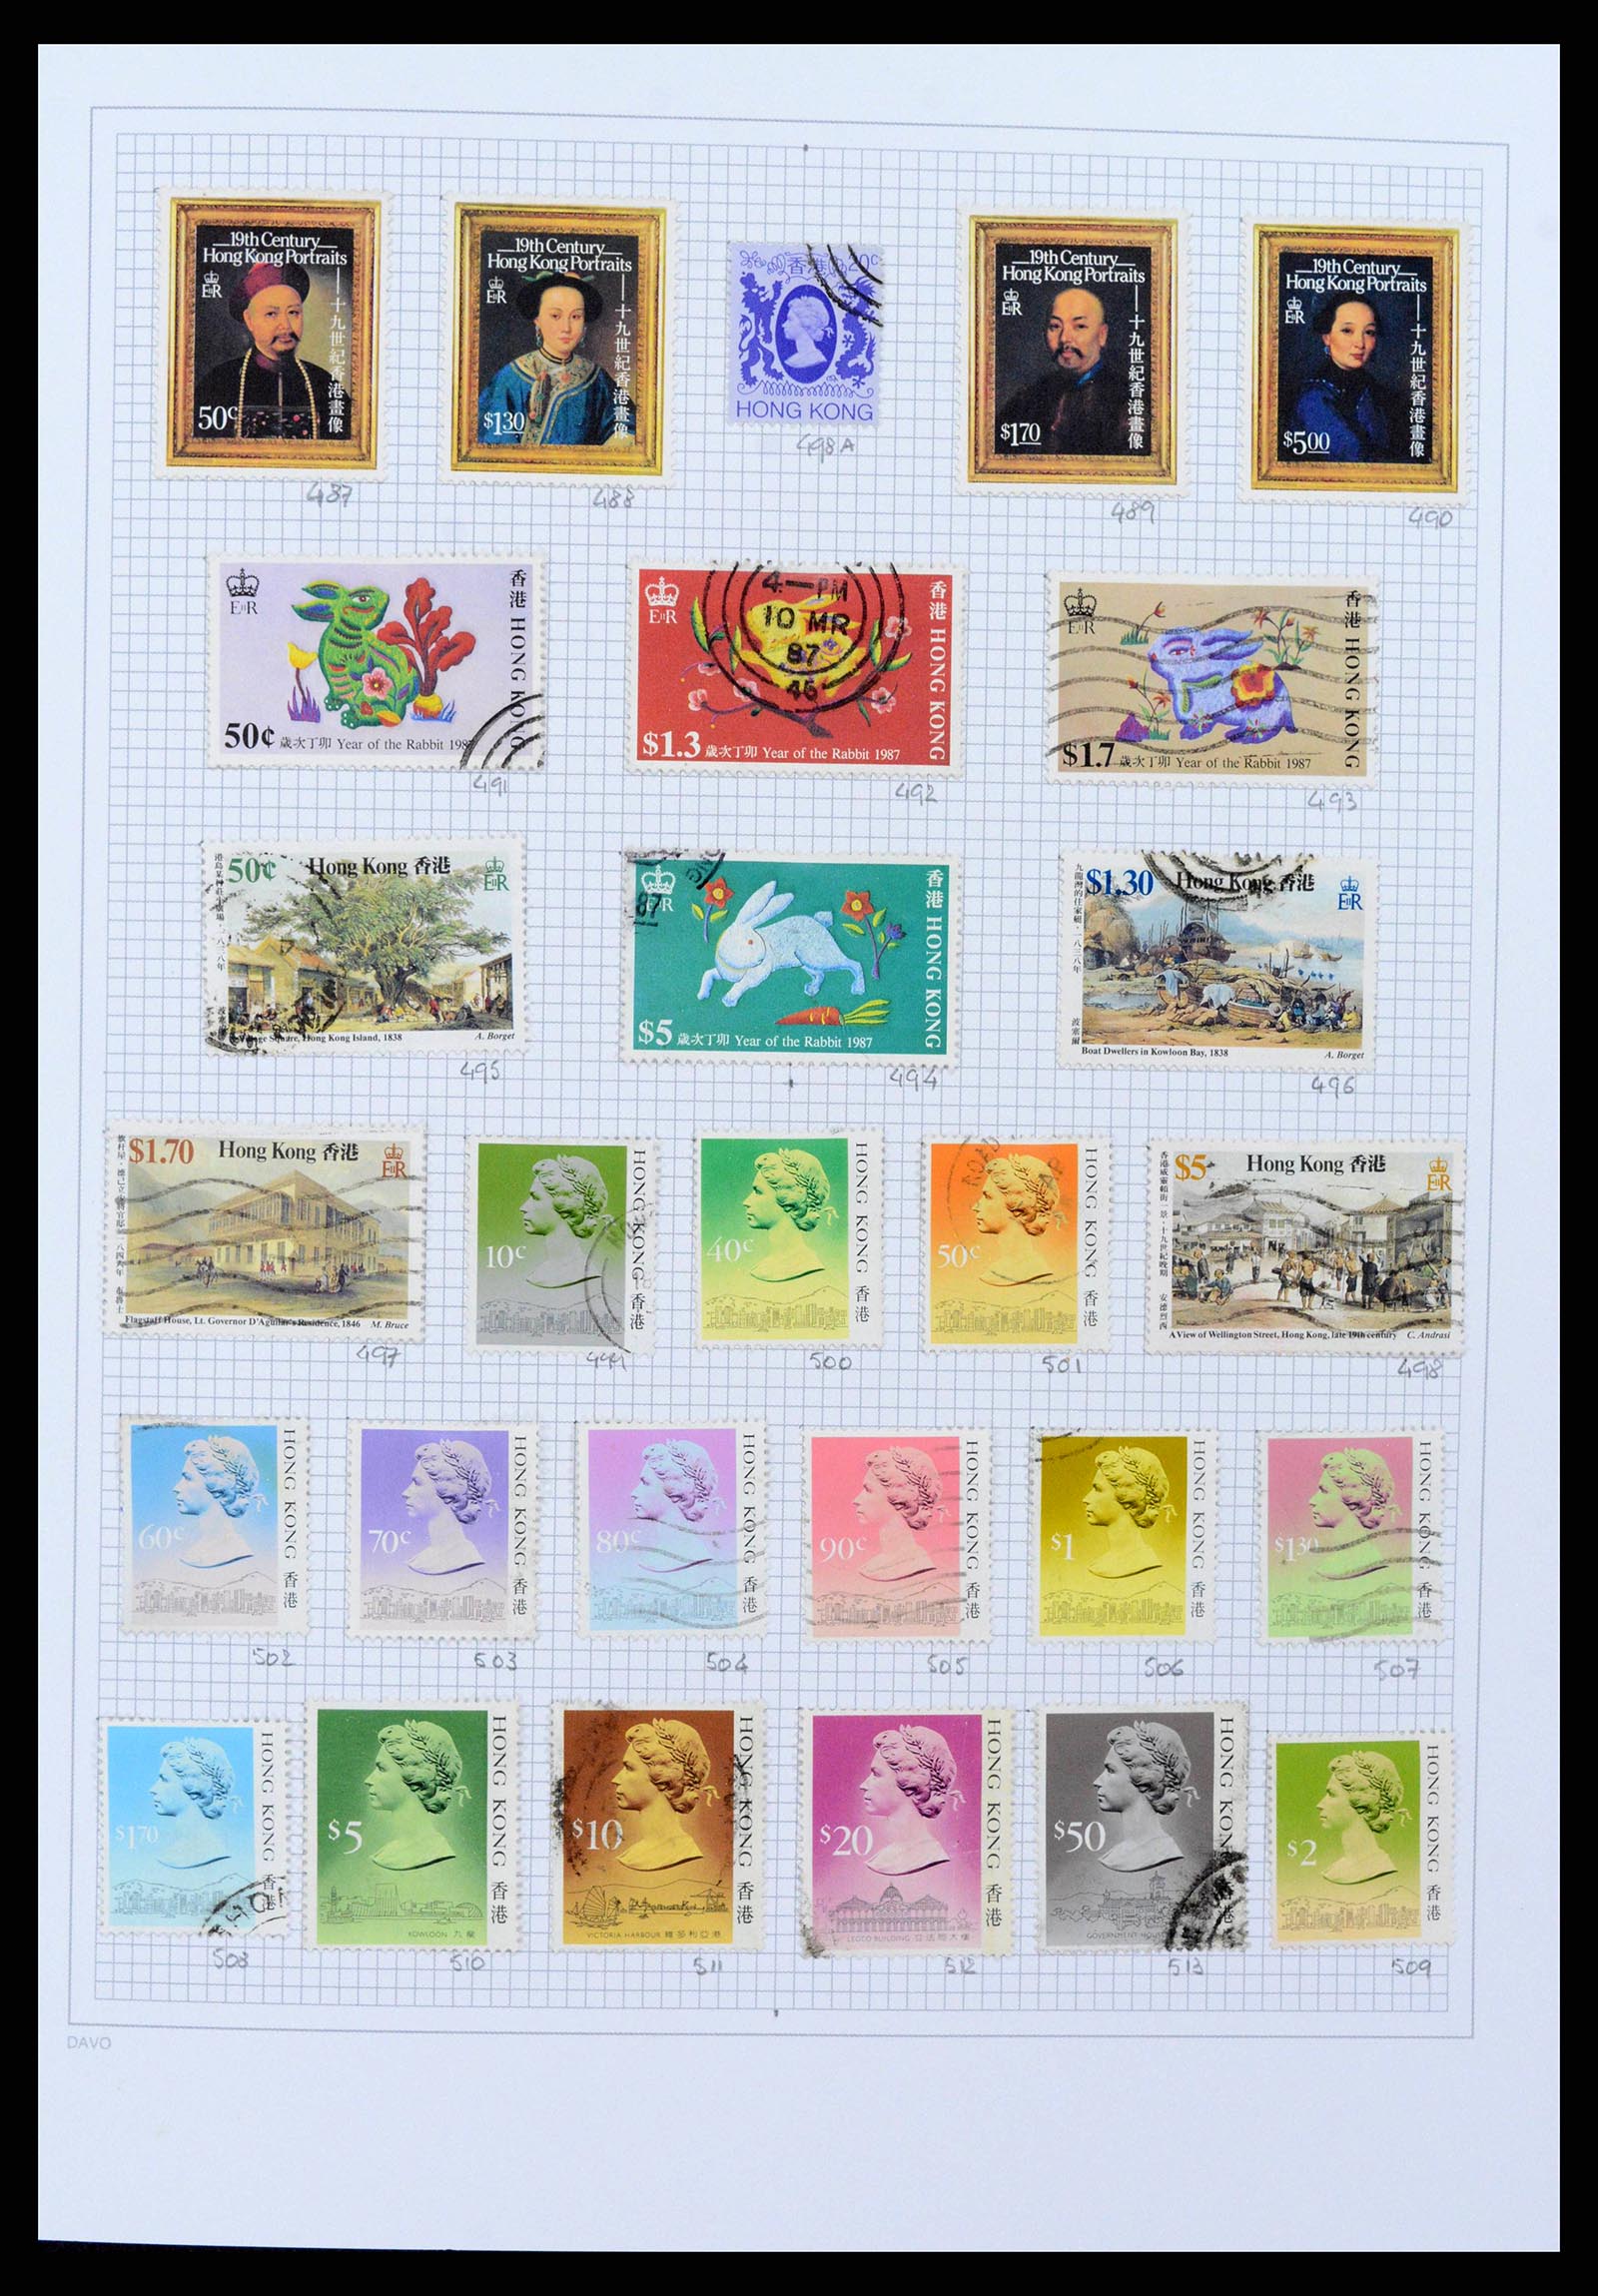 38158 0019 - Stamp collection 38158 Hong Kong 1862-1997.